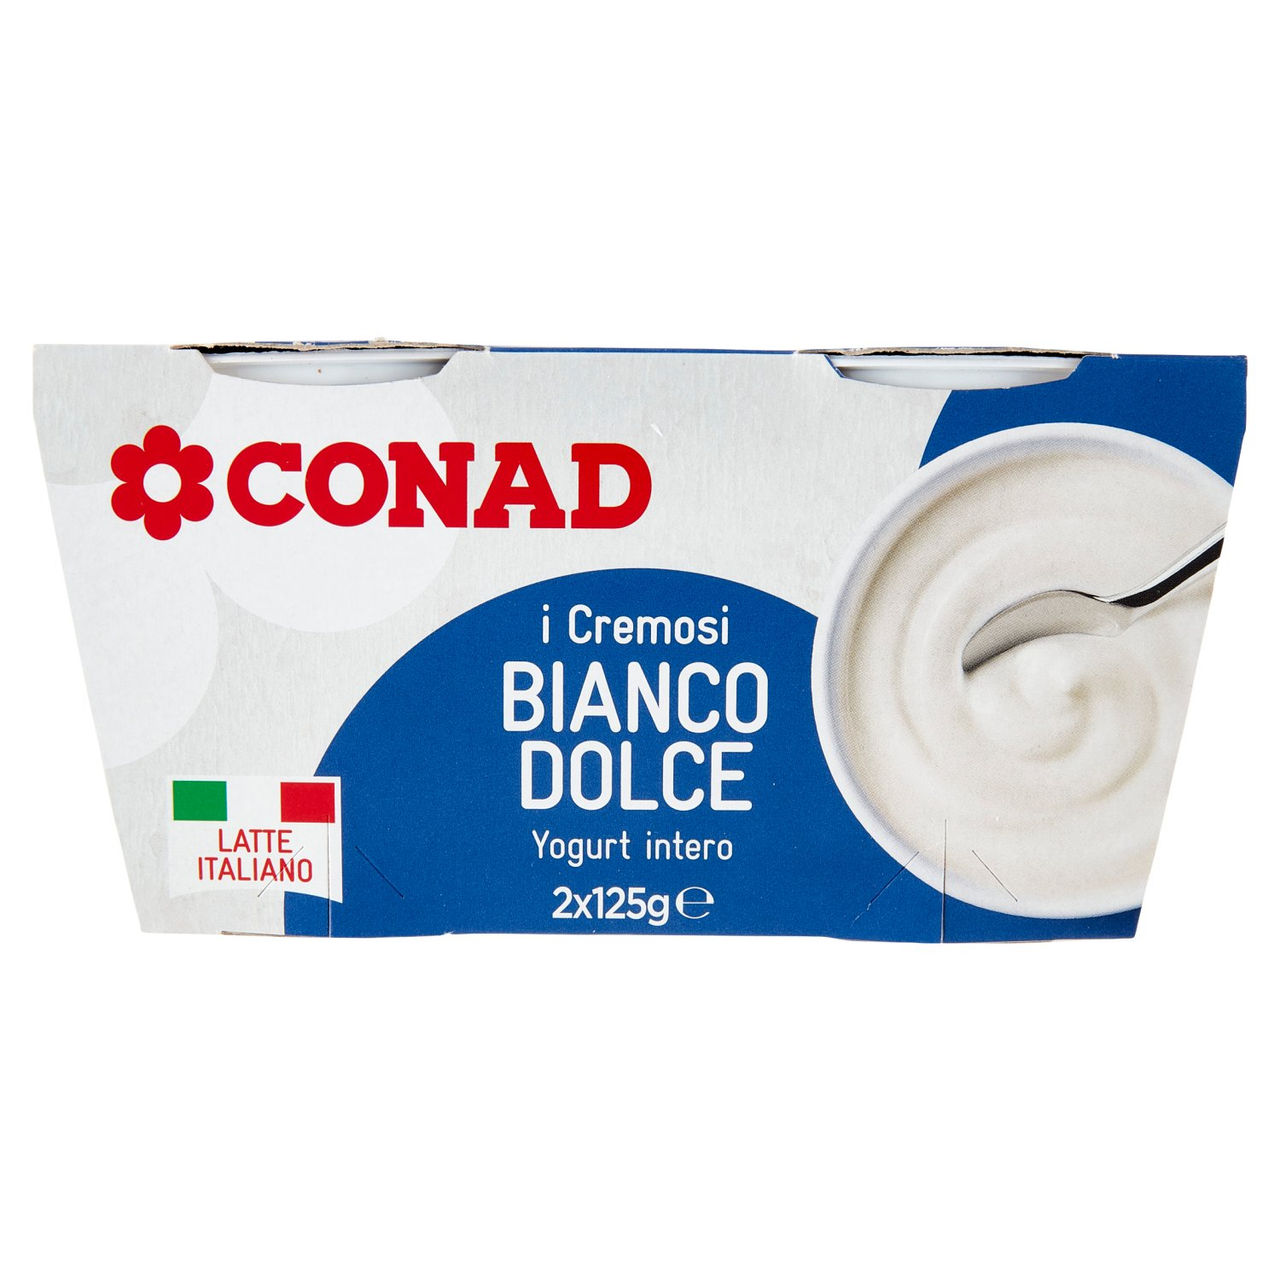 I Cremosi Bianco Dolce Yogurt Intero 2x125g Conad